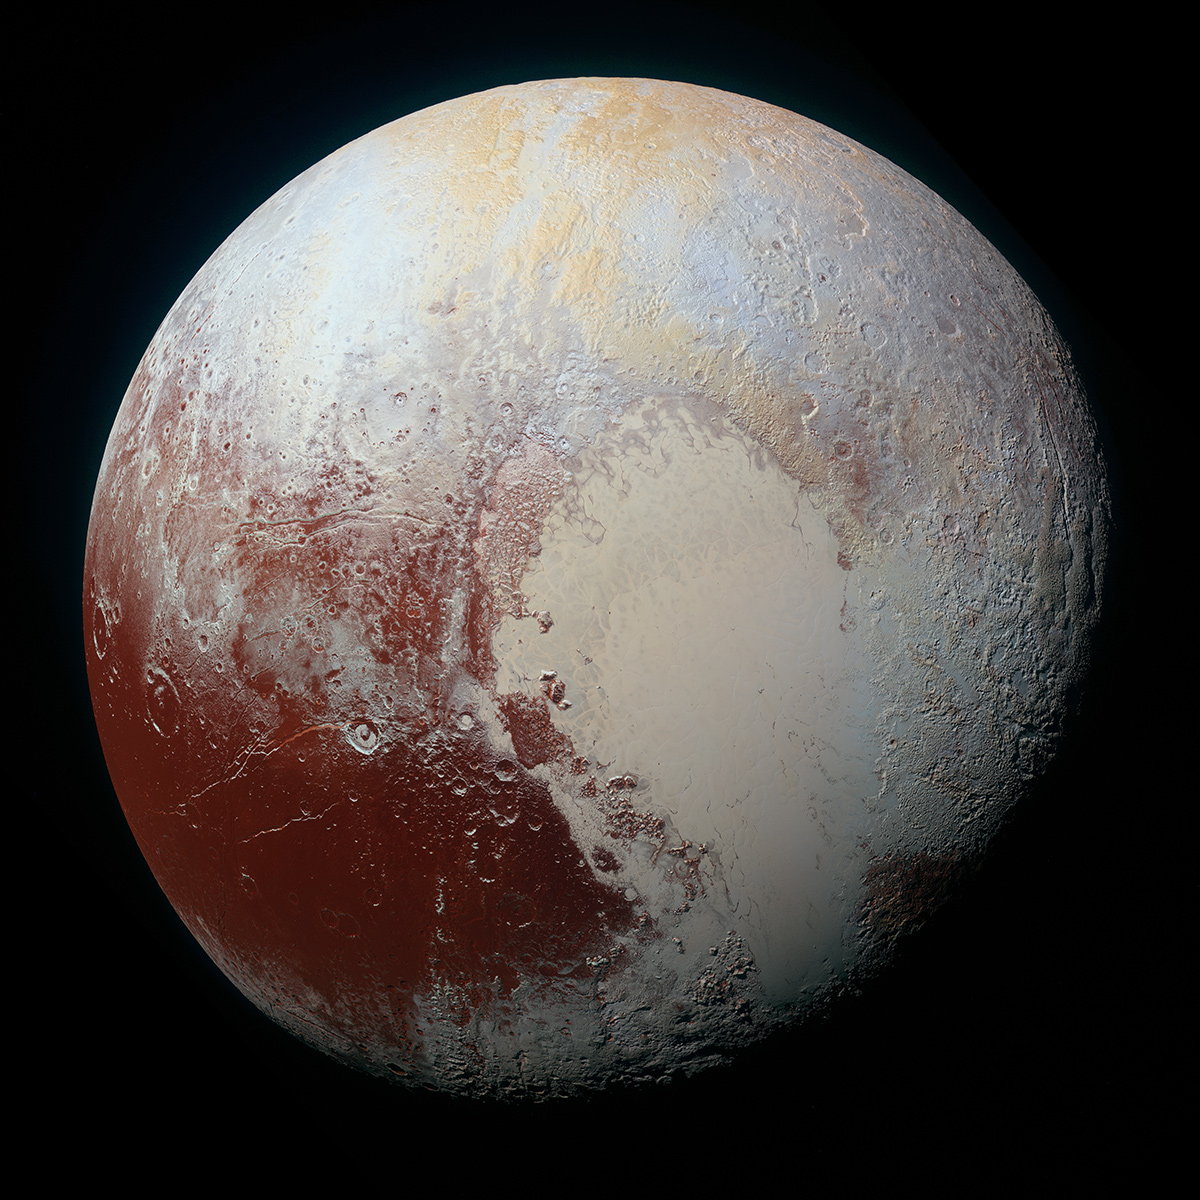 Pluto in enhanced color